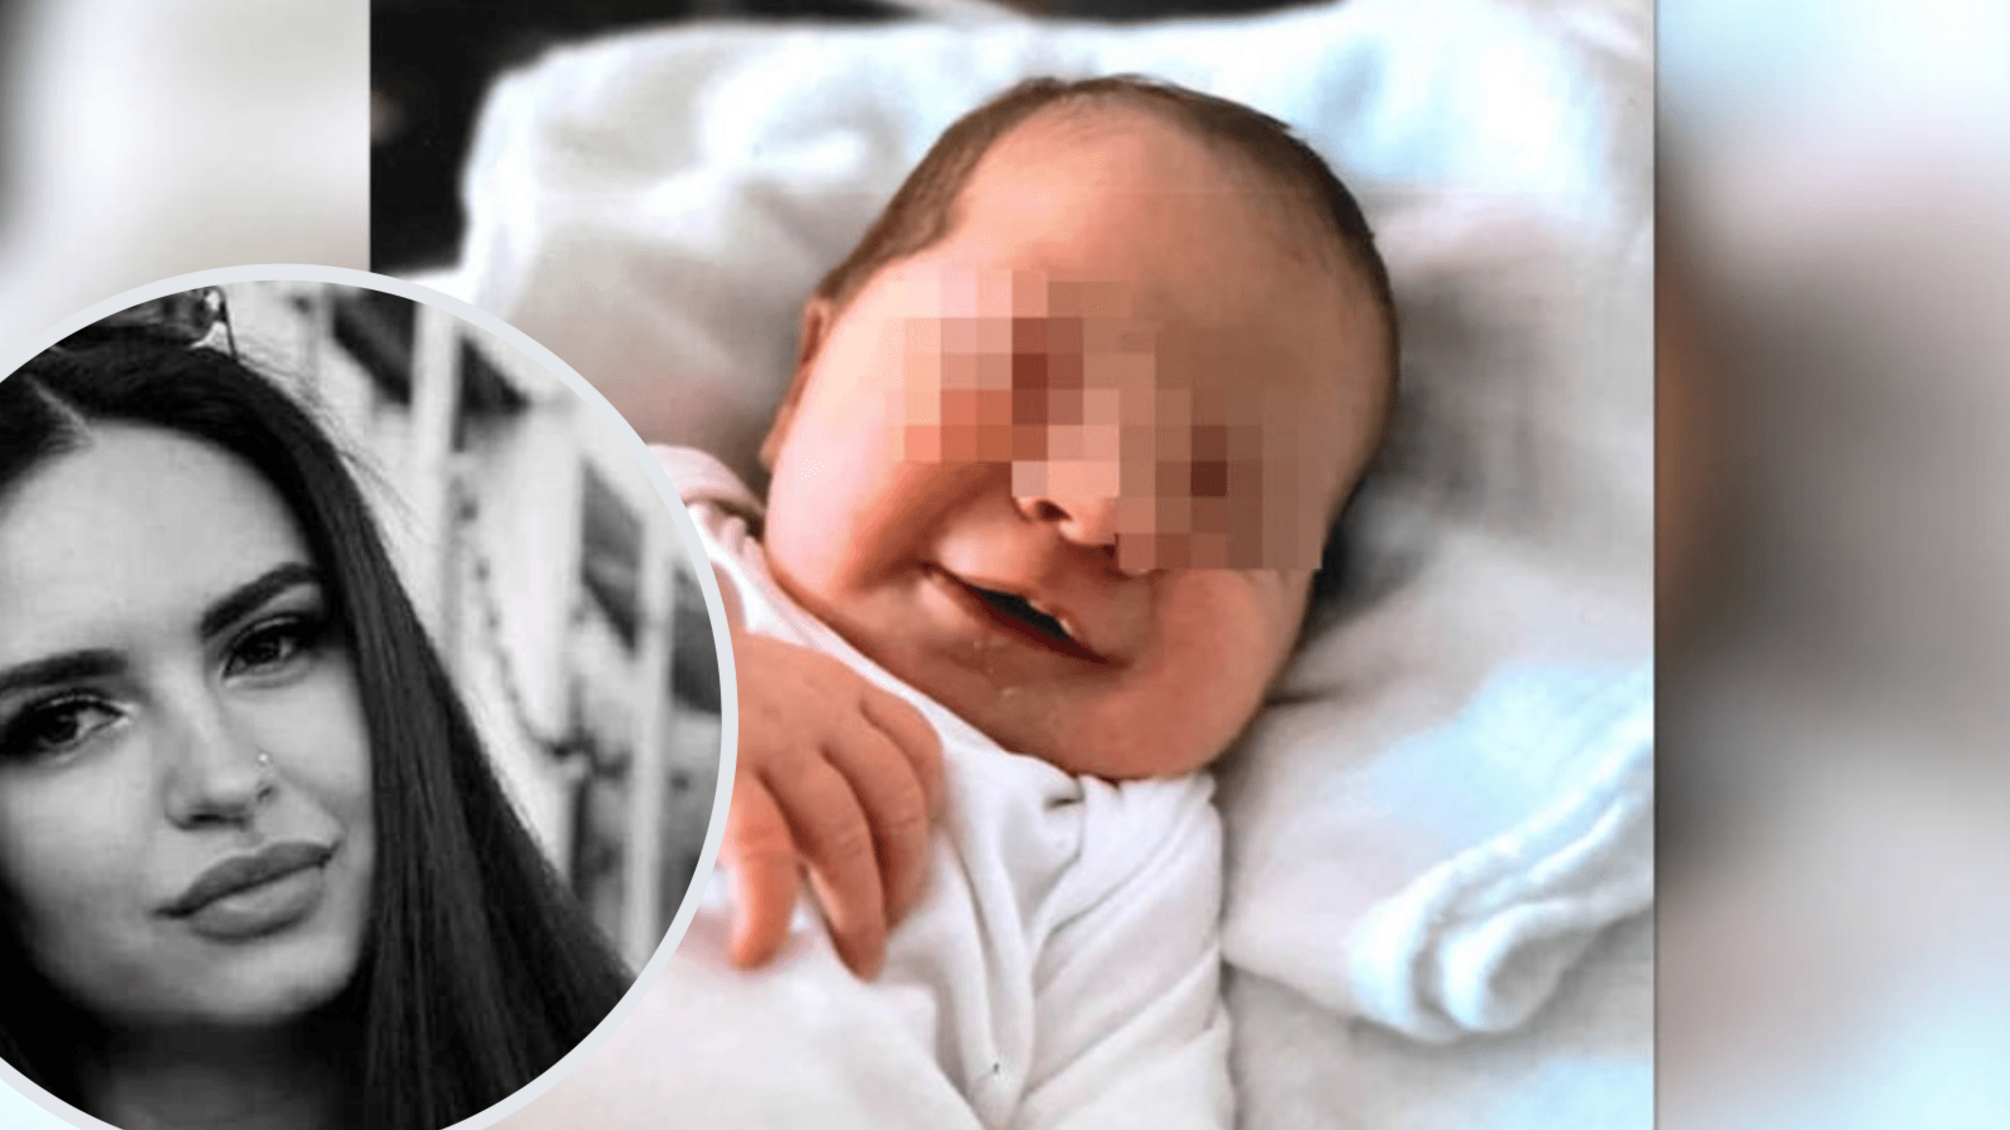 Два россиянина убили украинку и ее мать в Германии, чтобы похитить младенца, — BILD